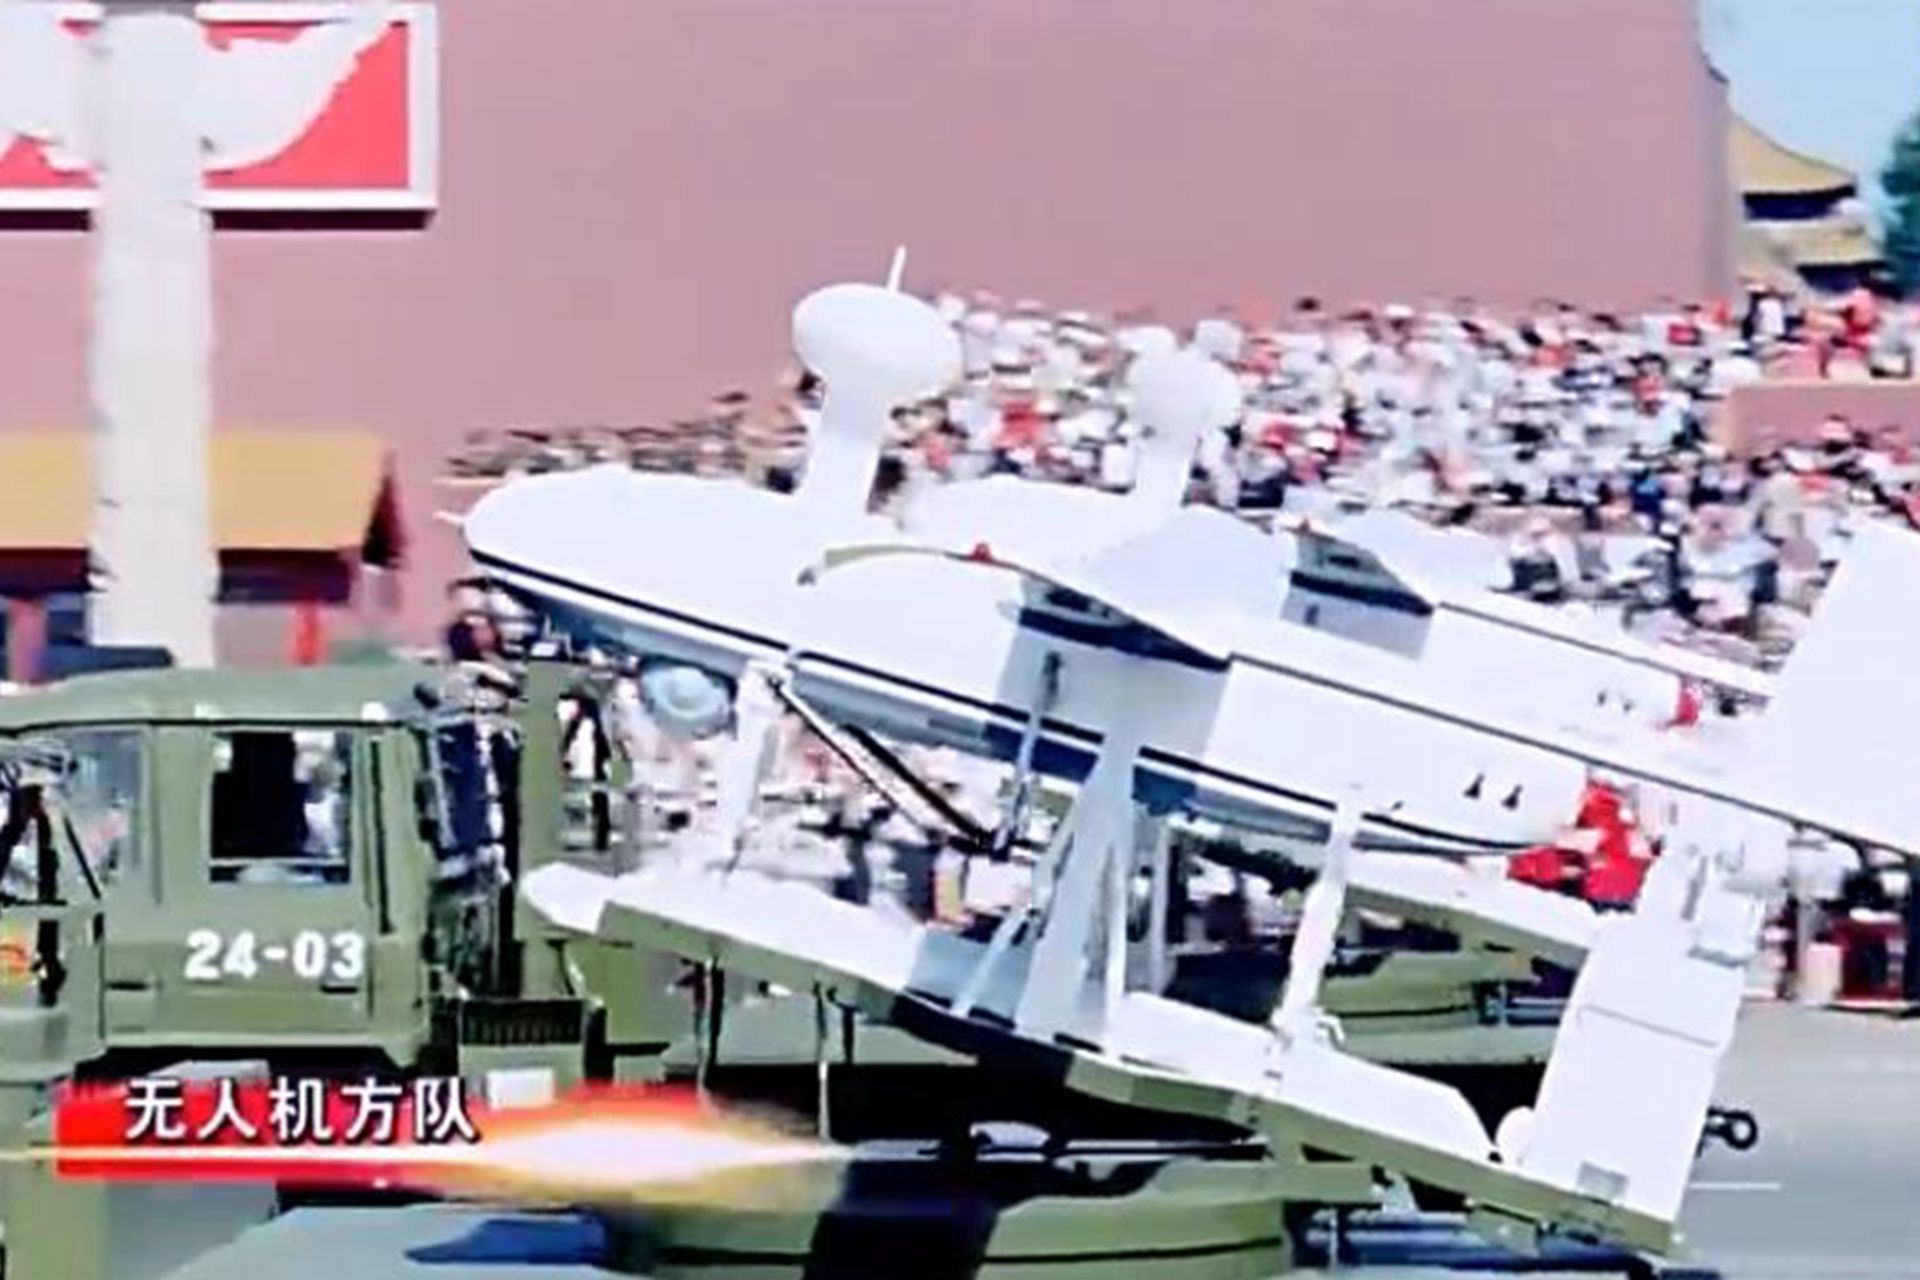 中国研制多型无人机。ASN系列无人机多采用后推式双尾撑结构，续航时间4小时至8小时，航程150公里，现有ASN-218短程无人机、ASN-216近程无人机、ASN-209F多用途无人机型号等。图为参加2009年10月1日中共建政60周年阅兵的ASN-207无人机。（中国央视截图）